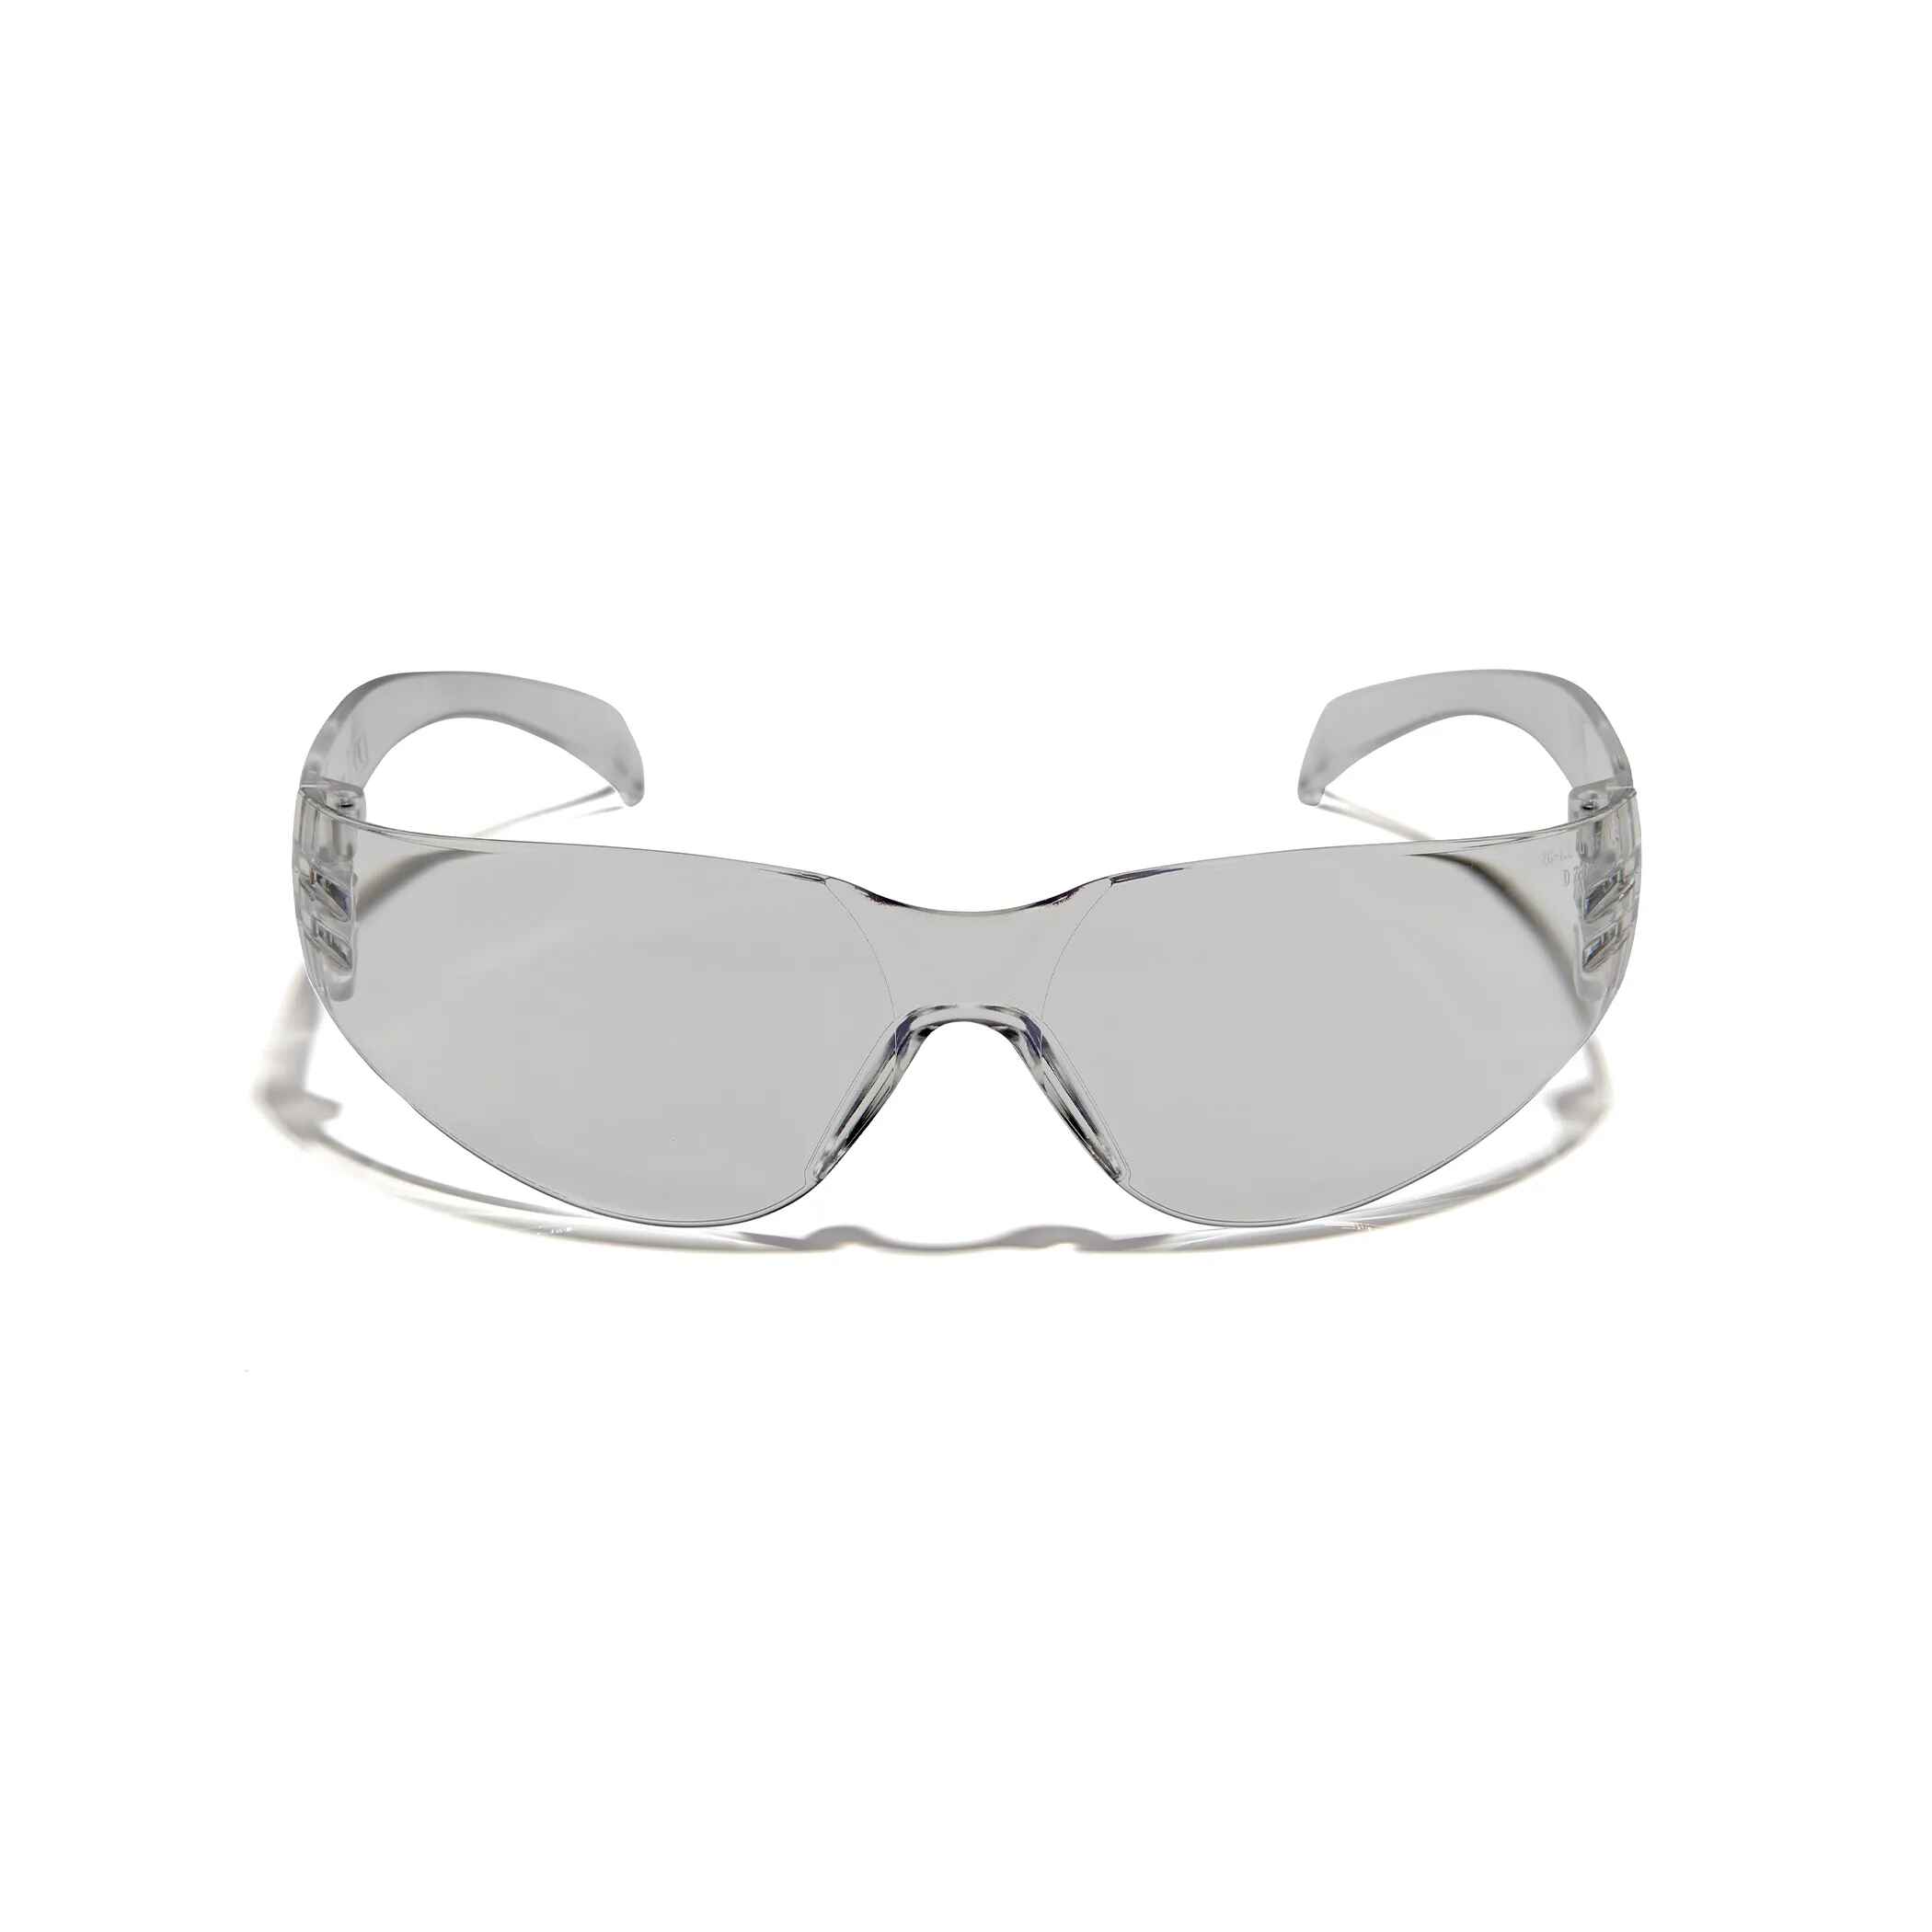 Safety Glasses, OSHA, ANSI Z87+, 30pc per Box Defender Safety, OPTIFENSE VS1 Smoked